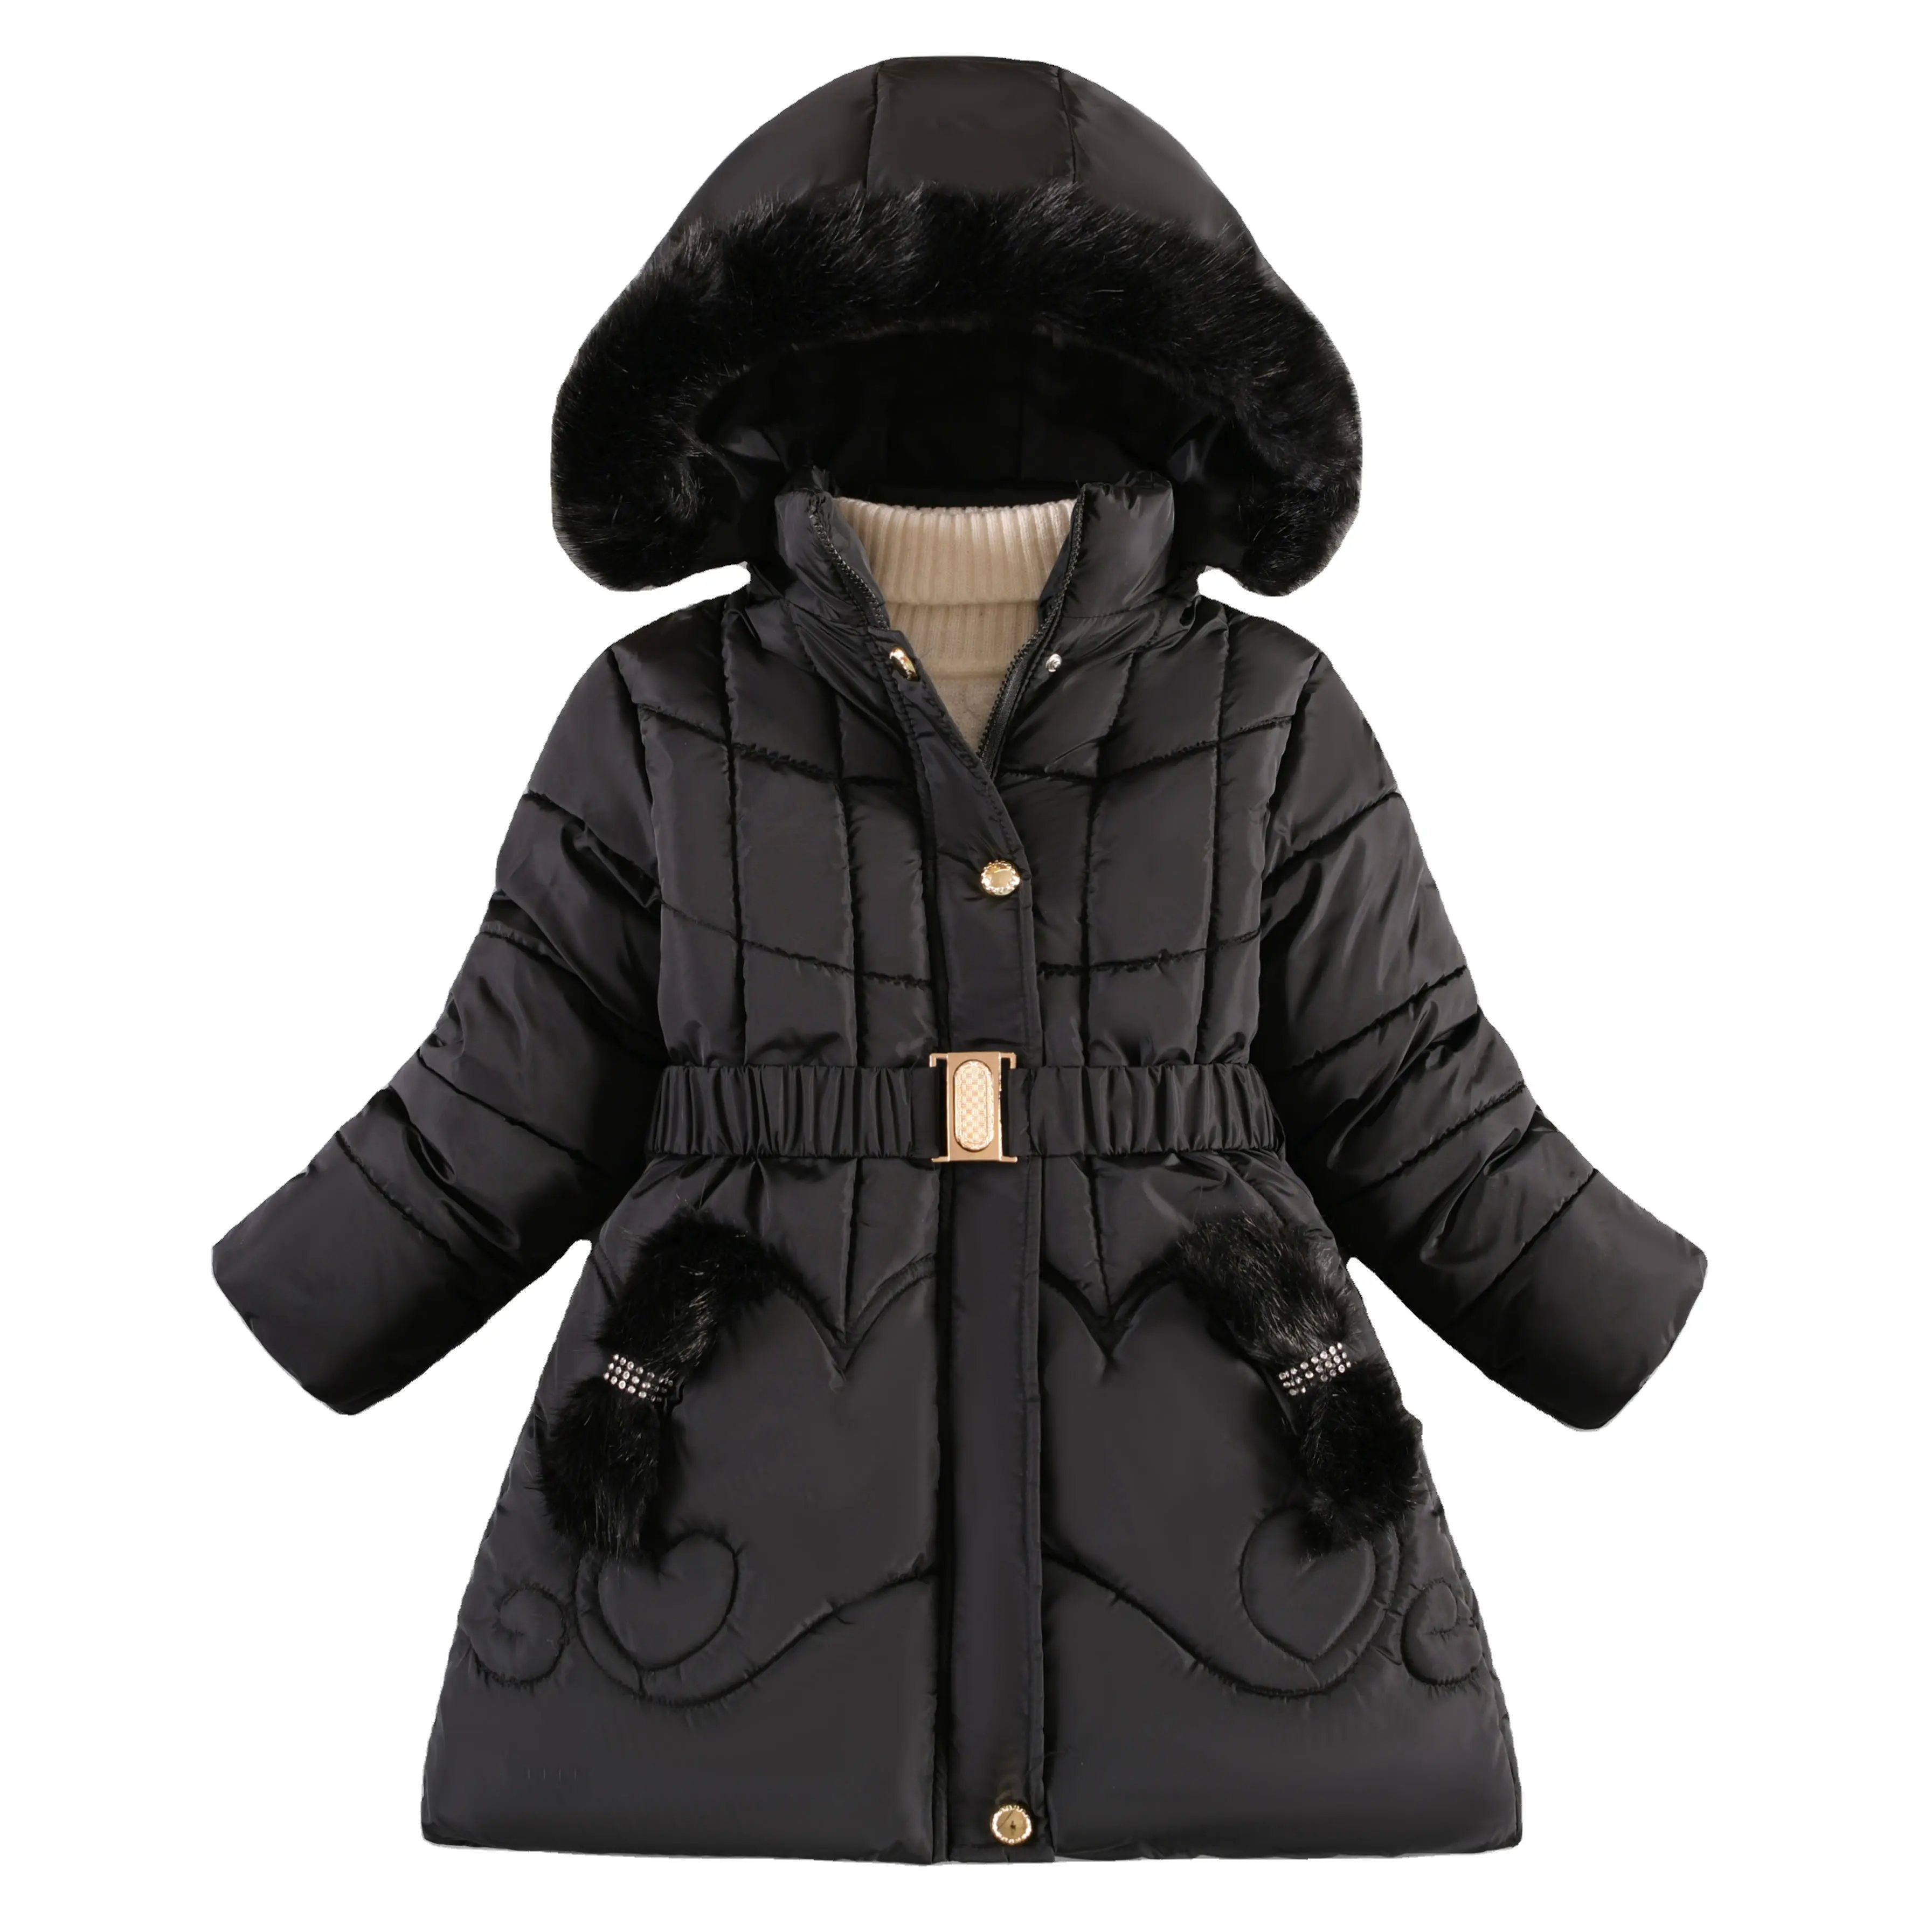 Toptan son tasarımlar moda kış sıcak tutmak uzun aşağı ceket kızlar genç kalın soğuk geçirmez kapşonlu rüzgar geçirmez ceket